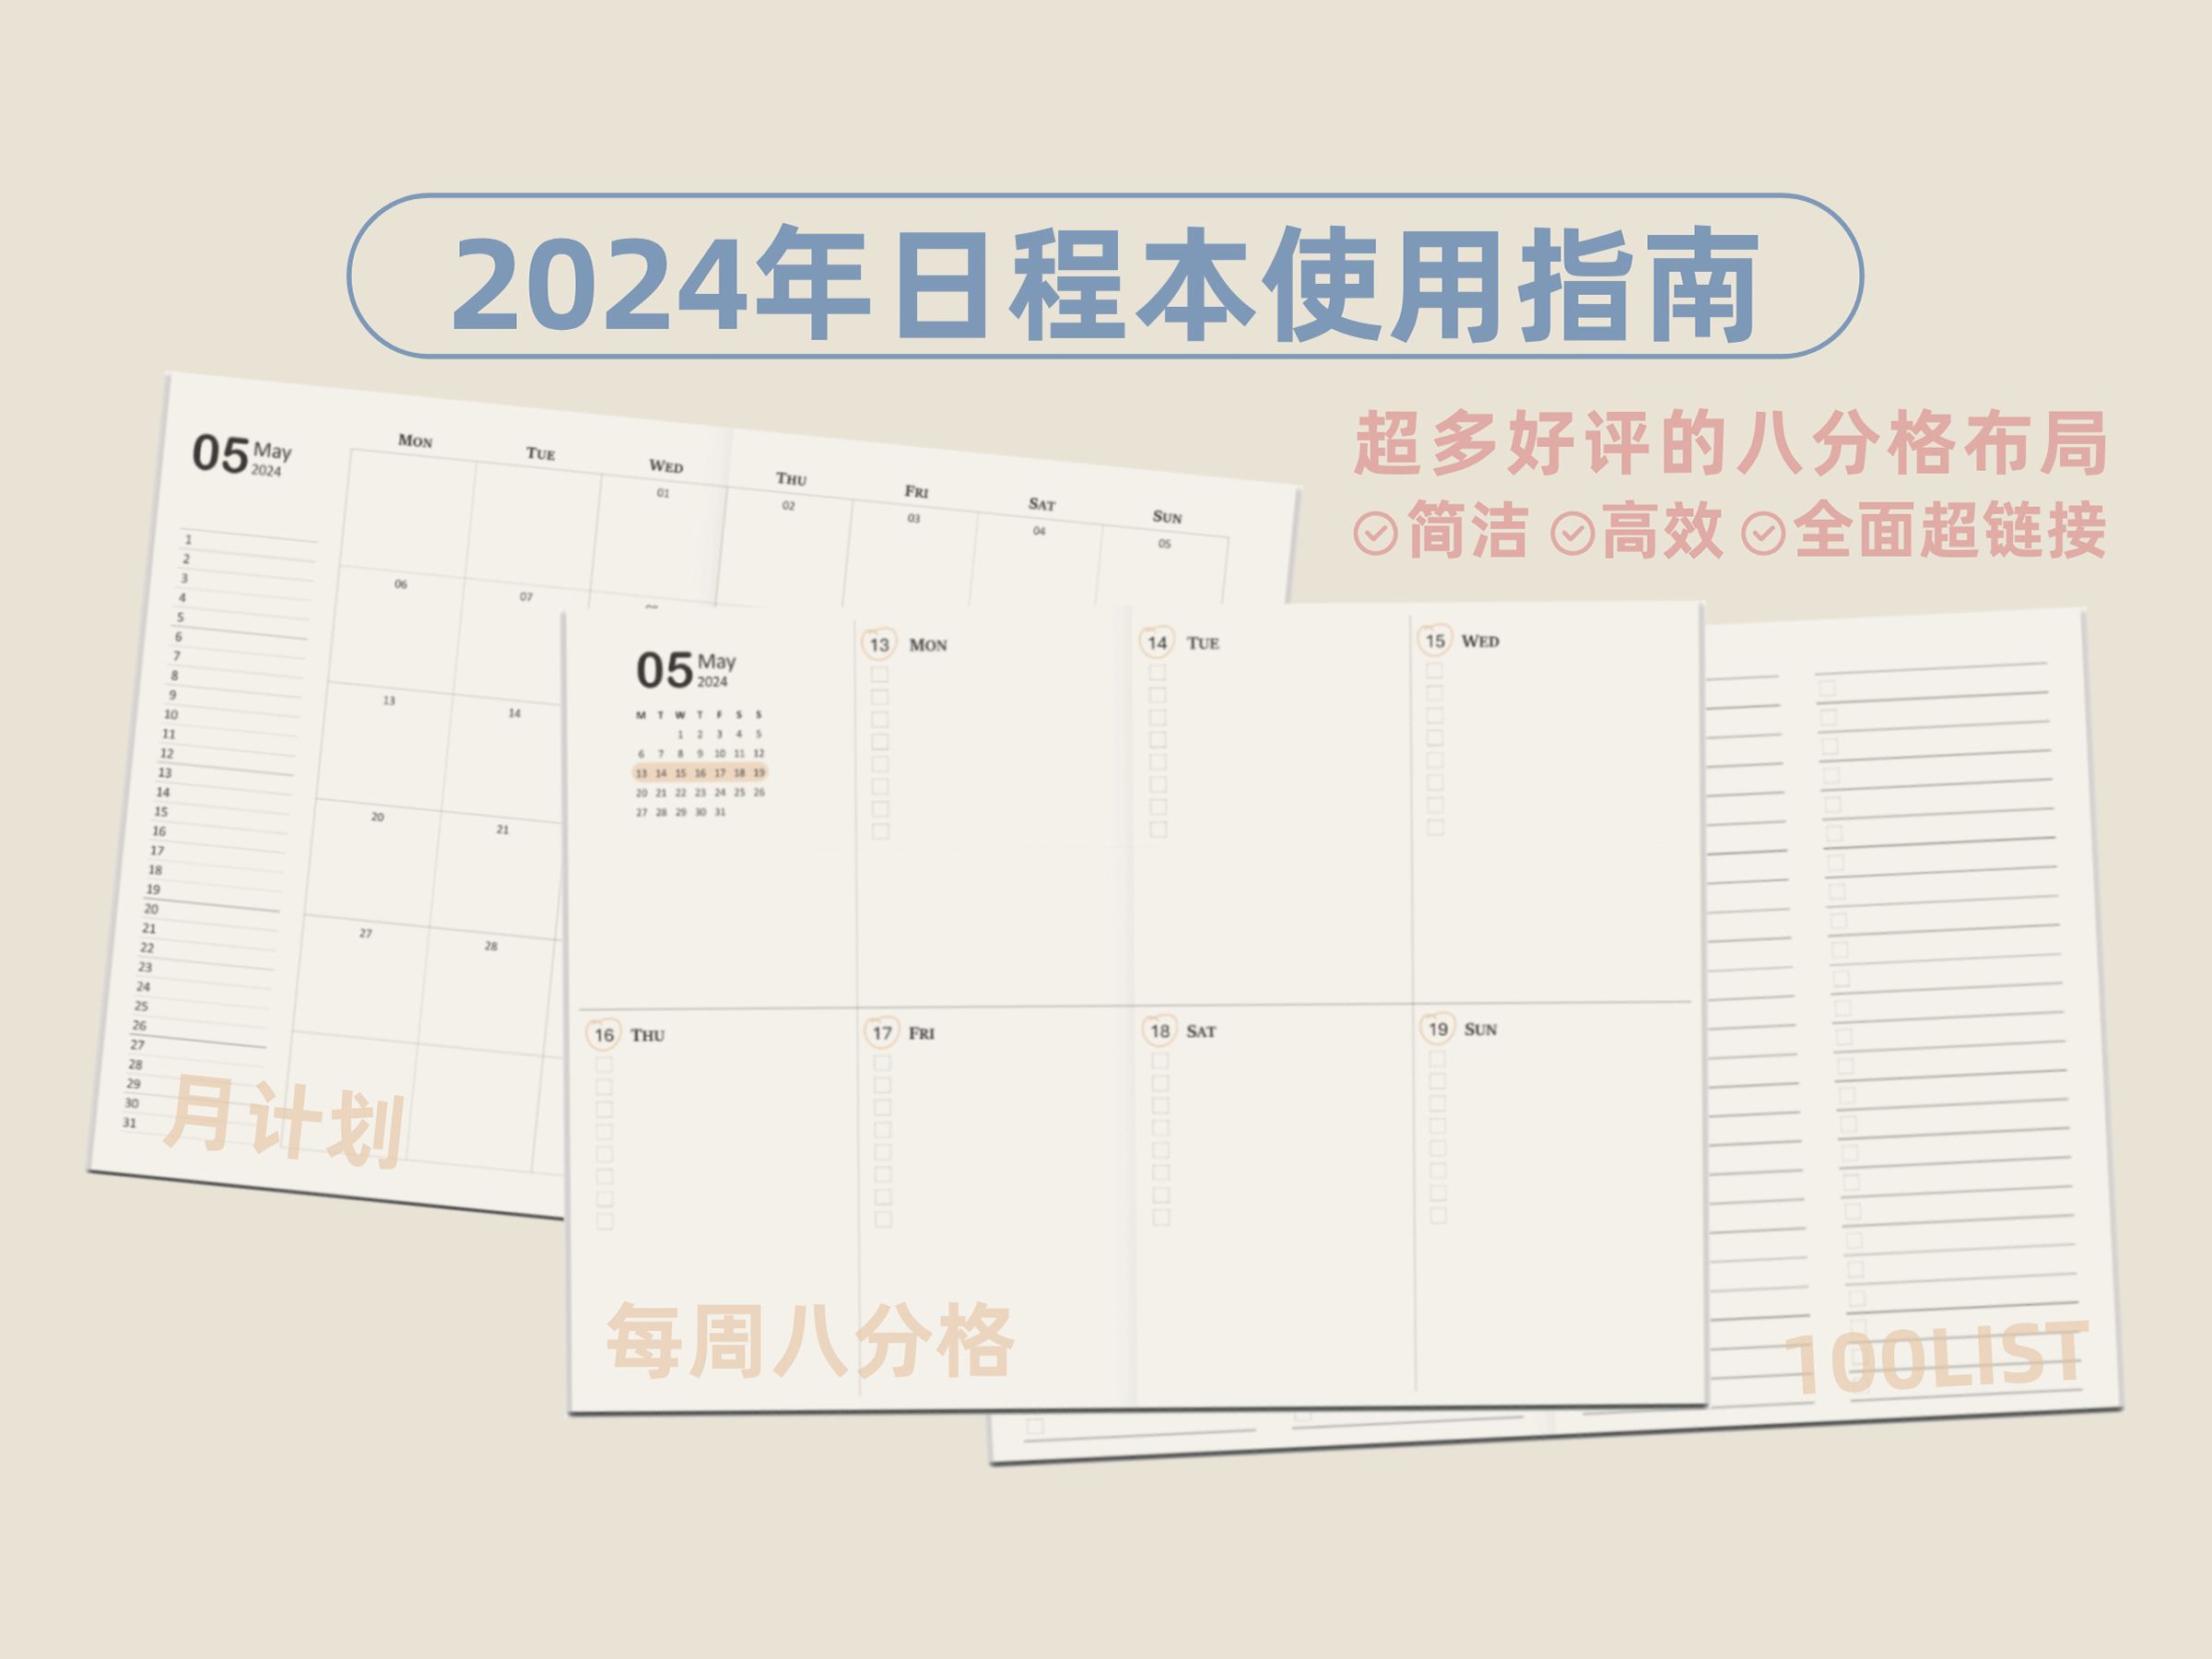 2024年日程本模板分享和使用指南 | 八分格周计划 | 高效日程安排